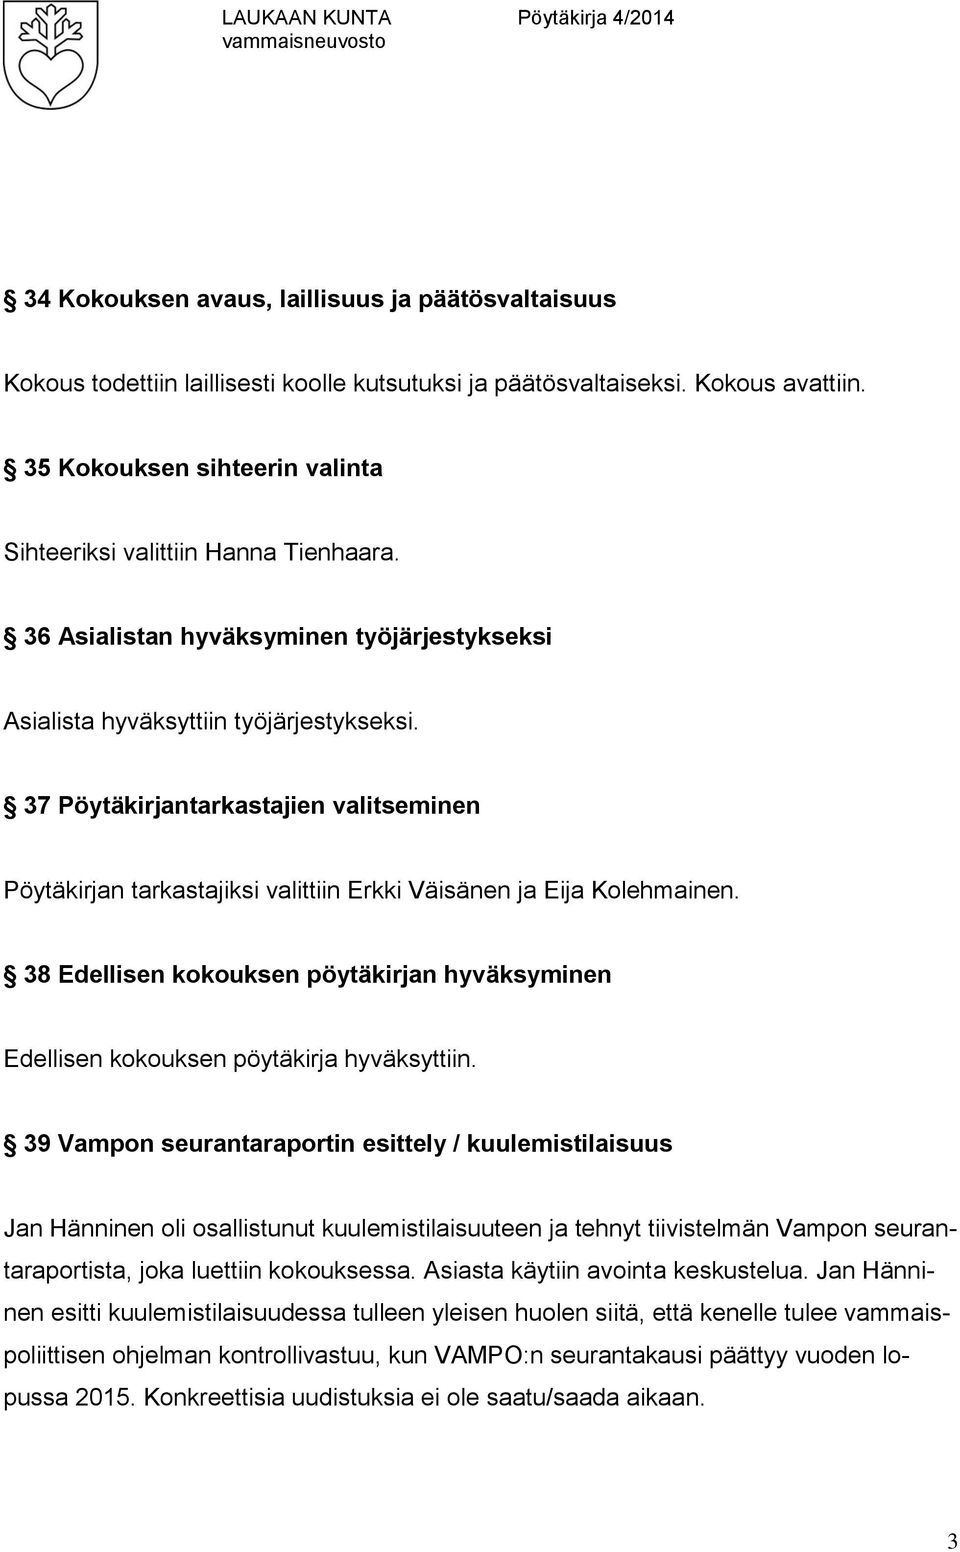 37 Pöytäkirjantarkastajien valitseminen Pöytäkirjan tarkastajiksi valittiin Erkki Väisänen ja Eija Kolehmainen.